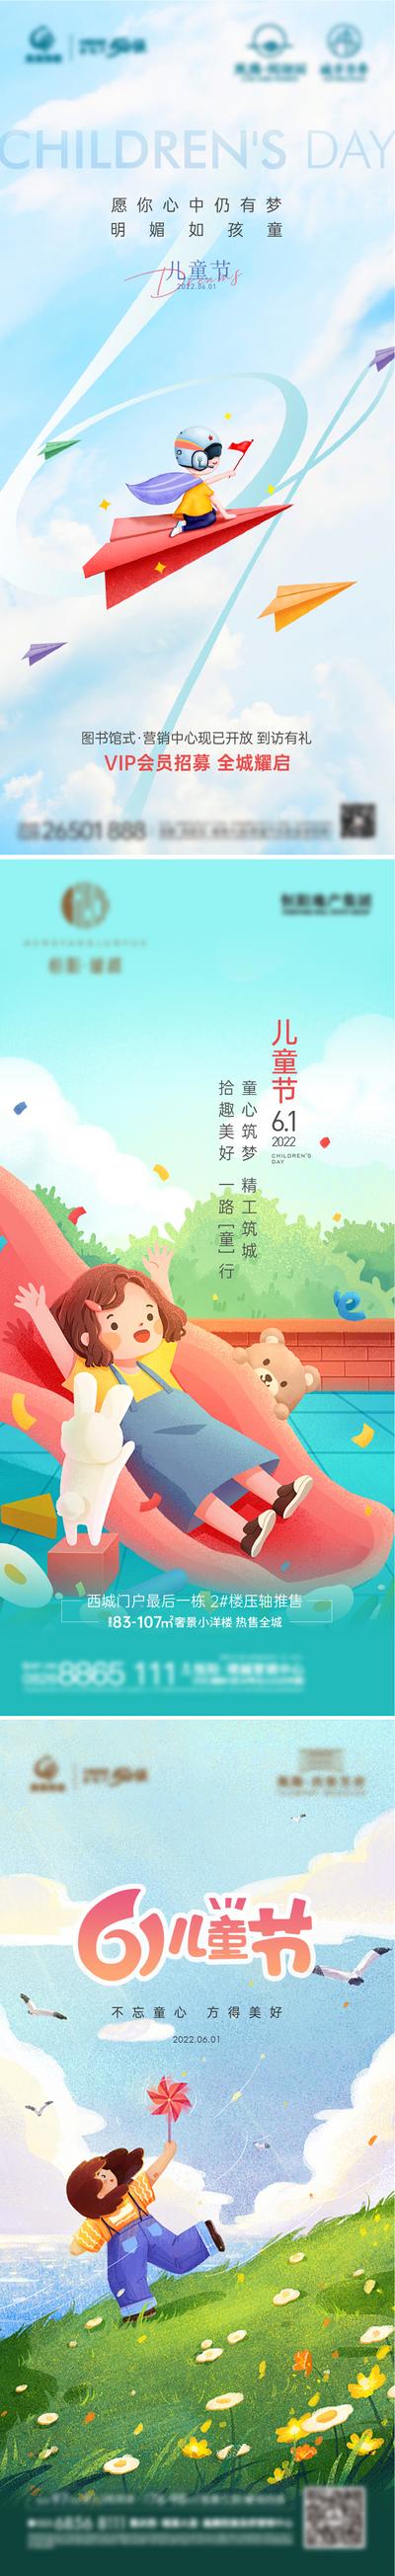 【南门网】海报 地产 公历节日 儿童节 滑梯 梦想 小孩 插画